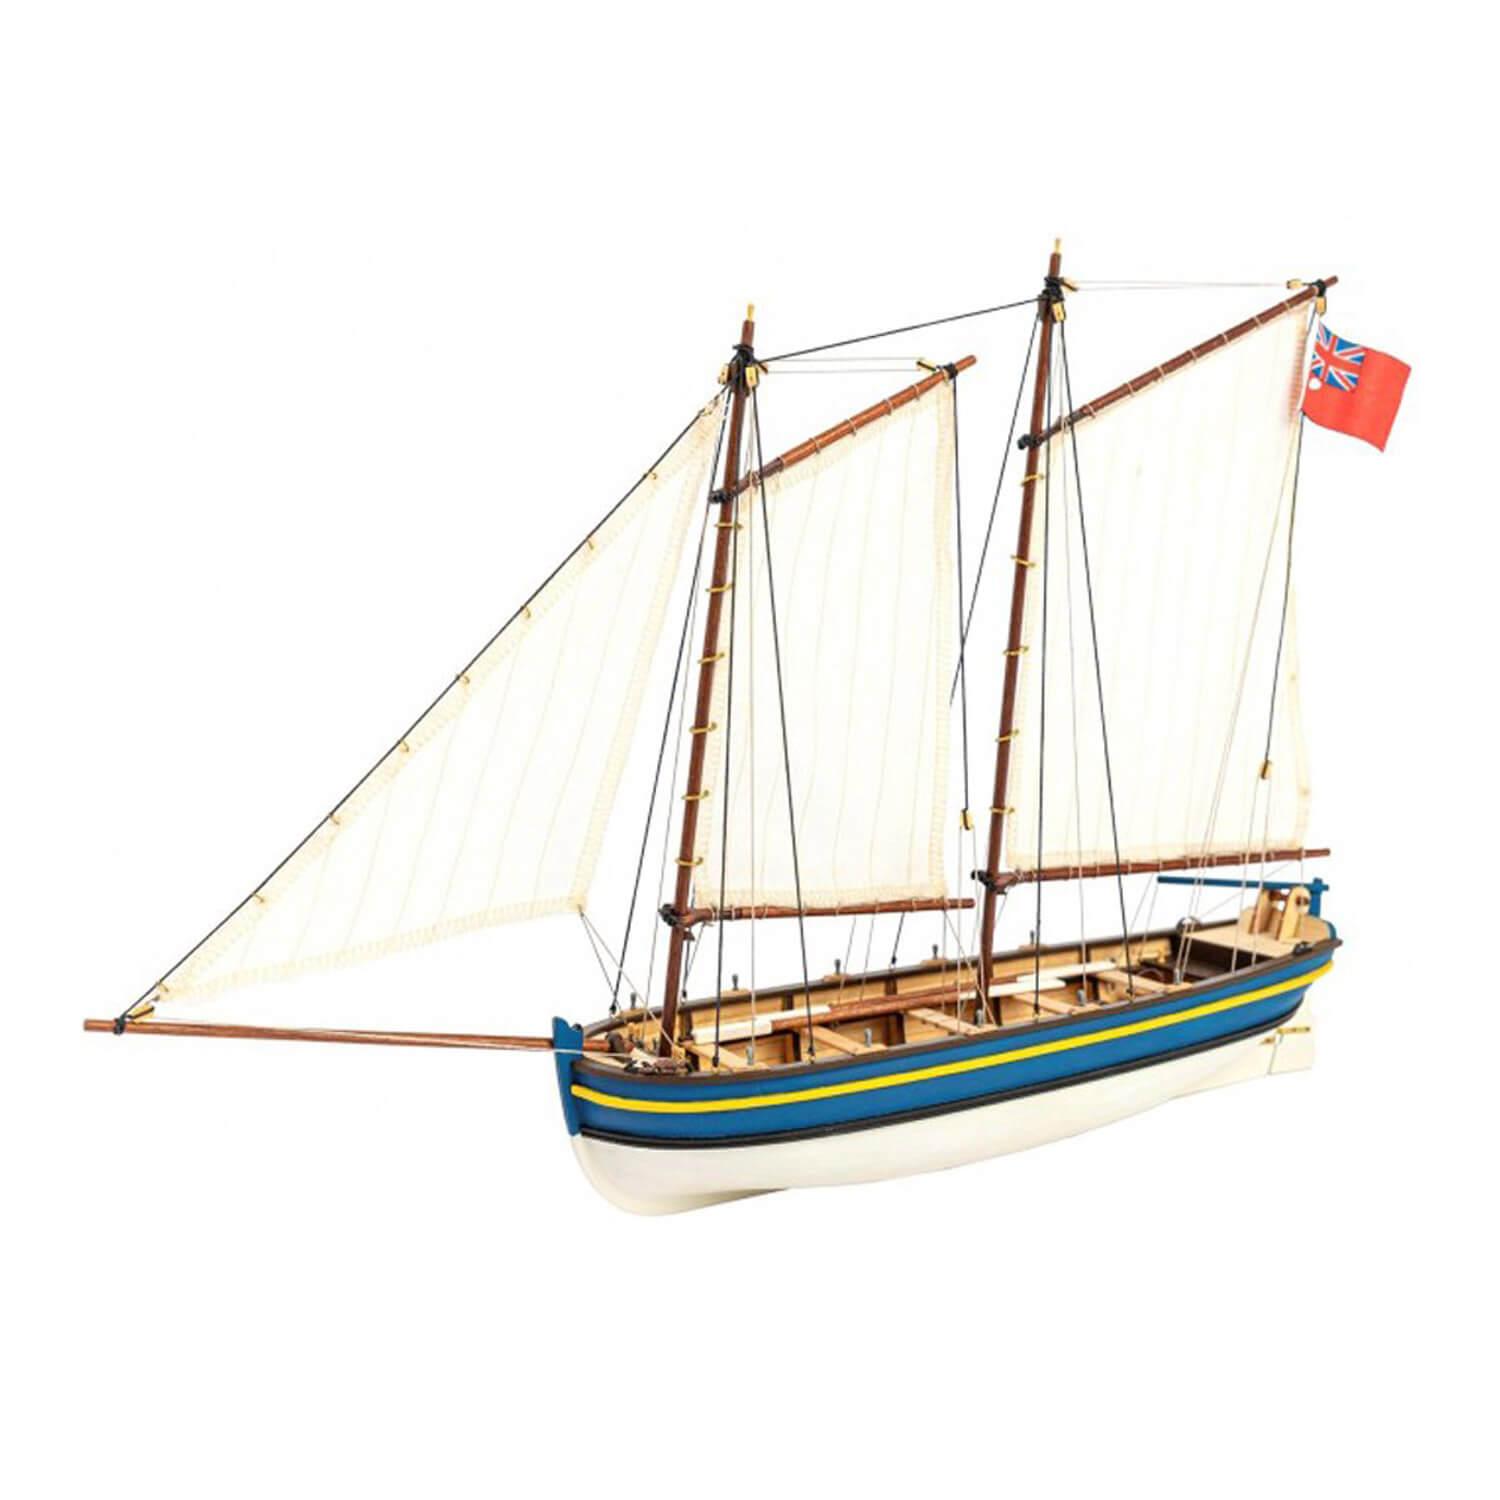 Maquette bateau en bois : Canot du Capitaine HMS Endeavour